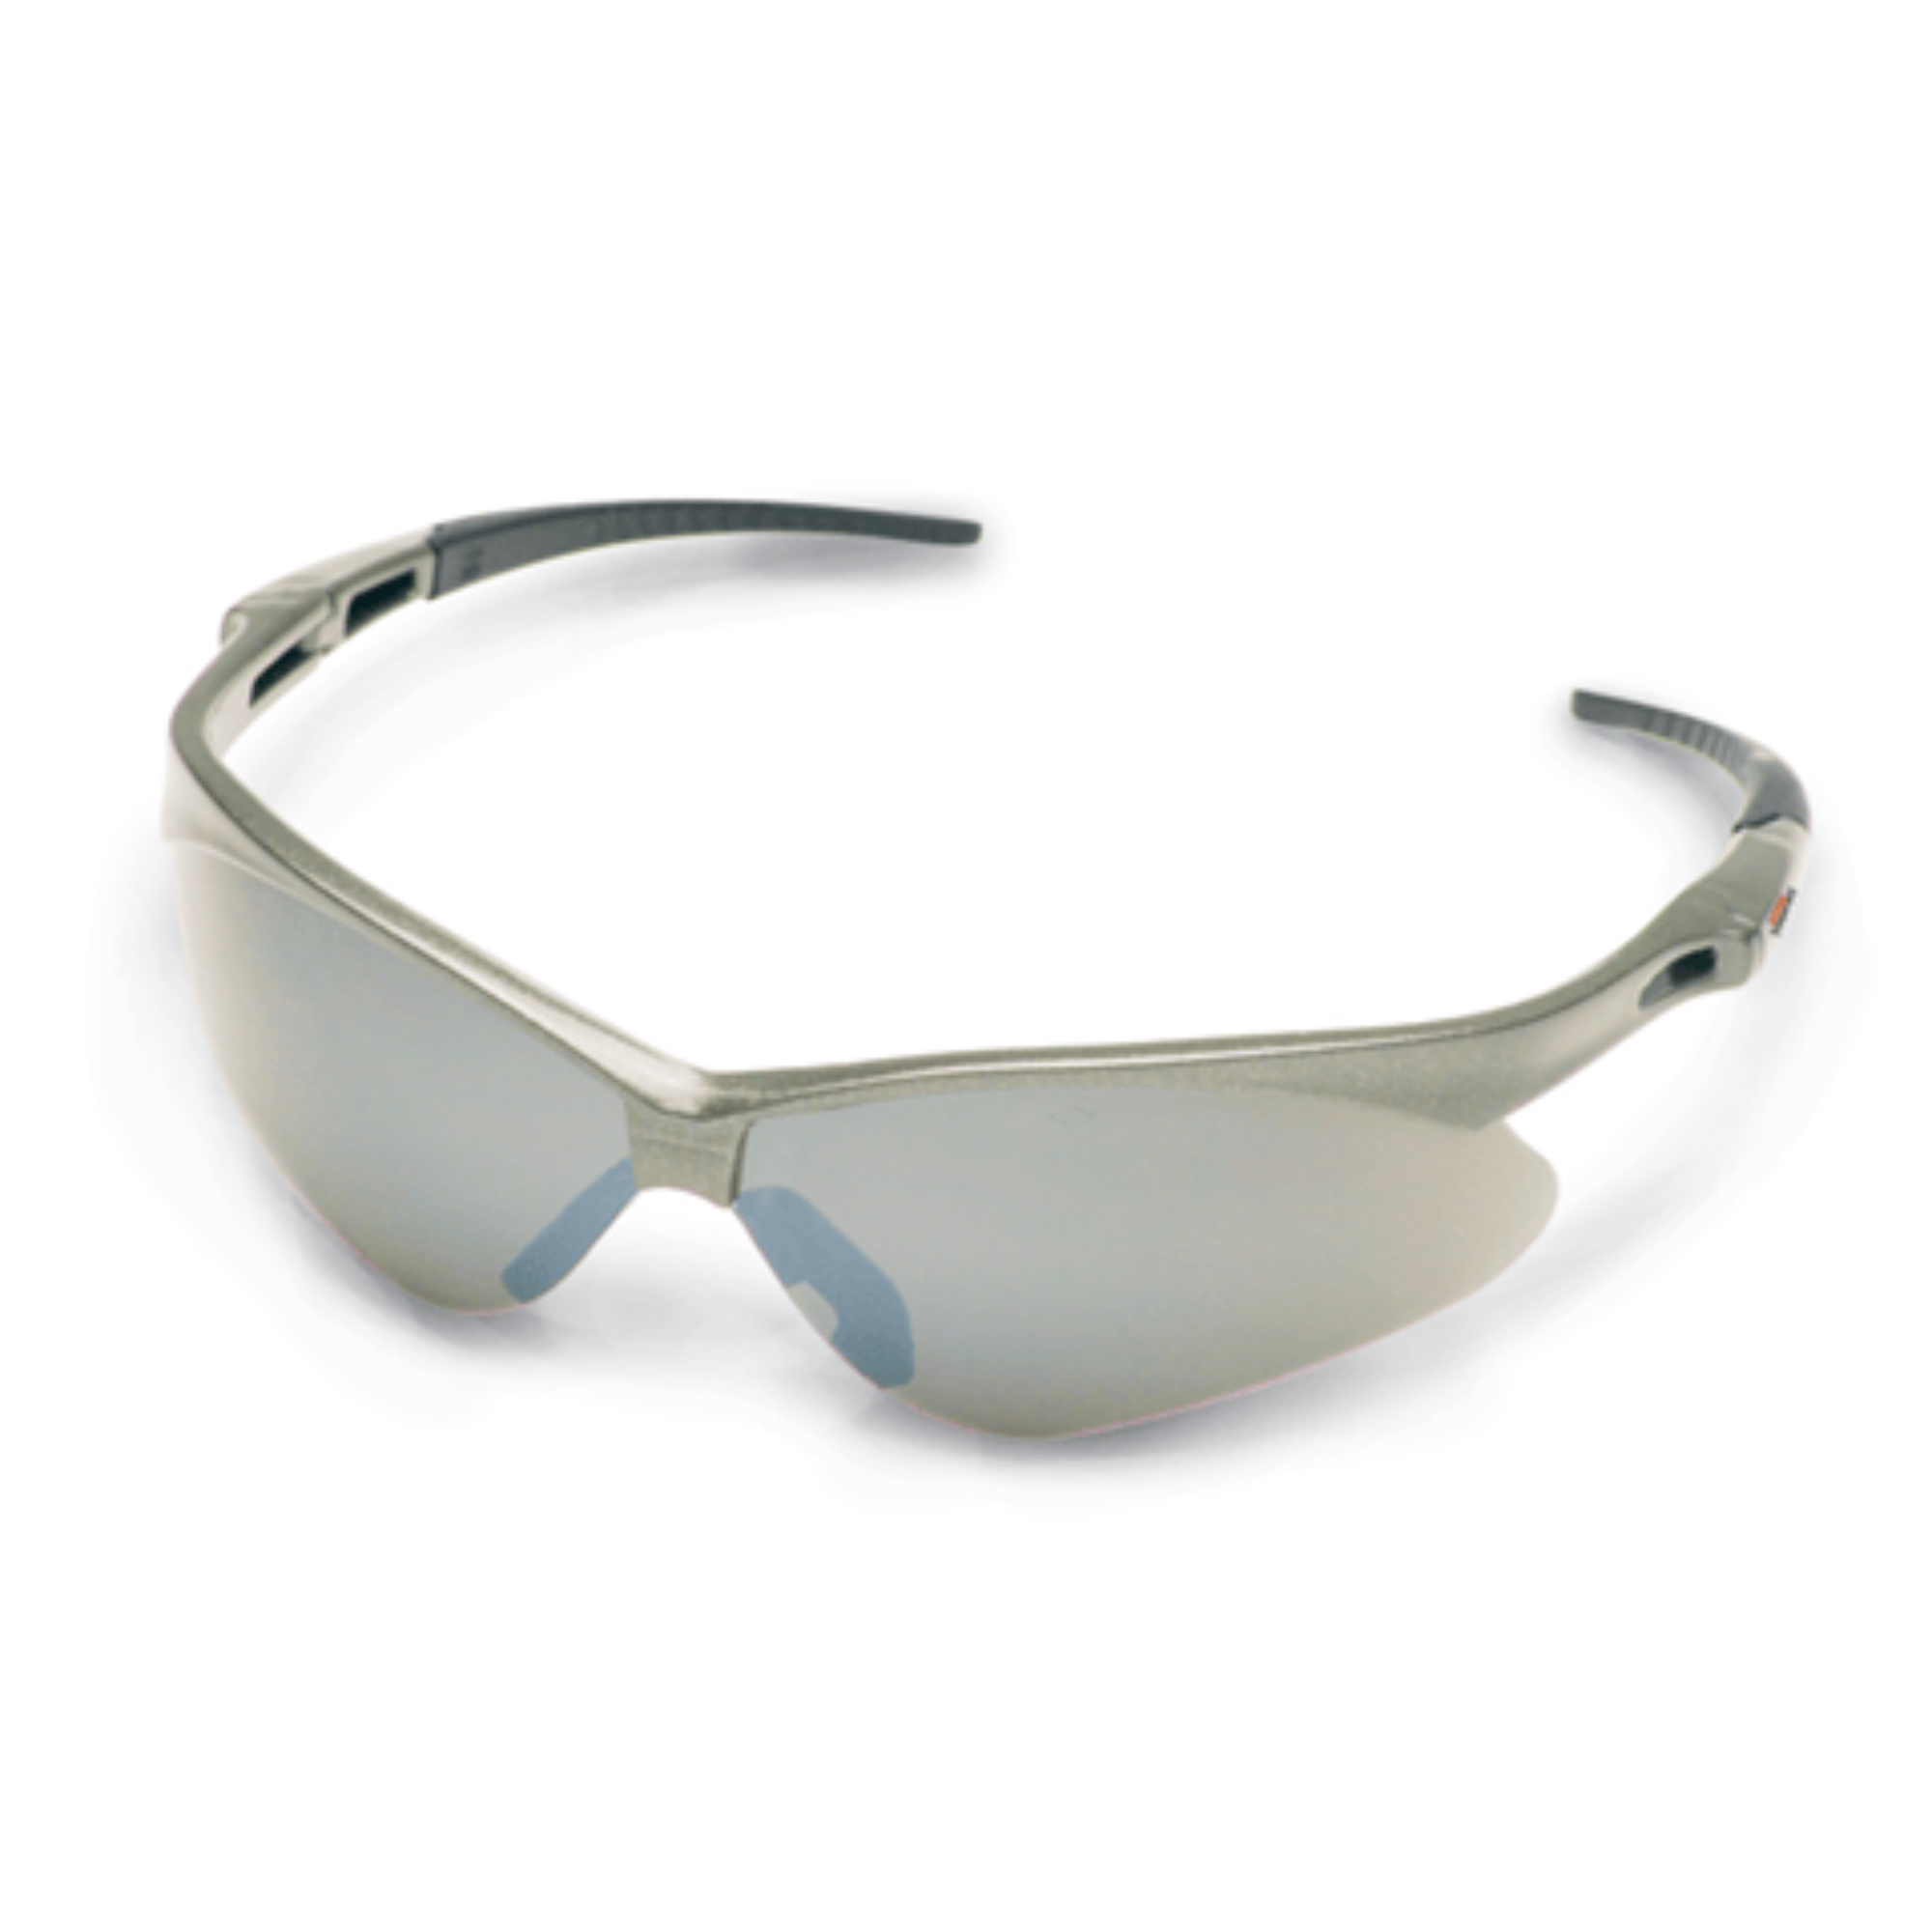 Stihl TIMBERSPORTS Glasses | Smoke Lens | 7010 884 0316